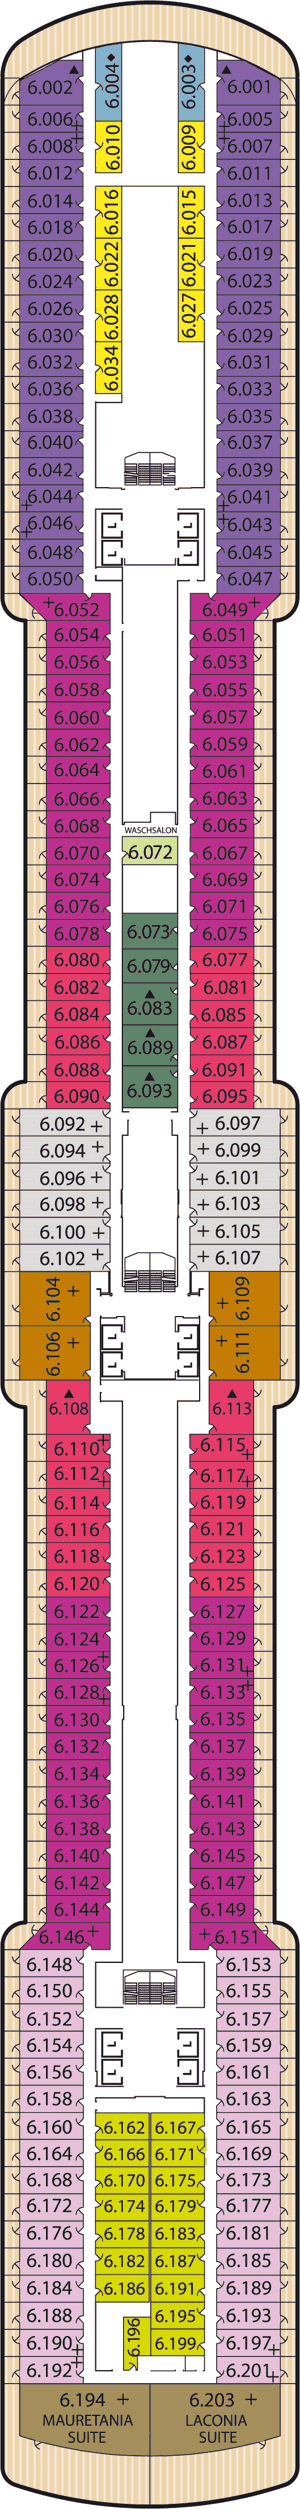 Queen Victoria - Decksplan Deck 6